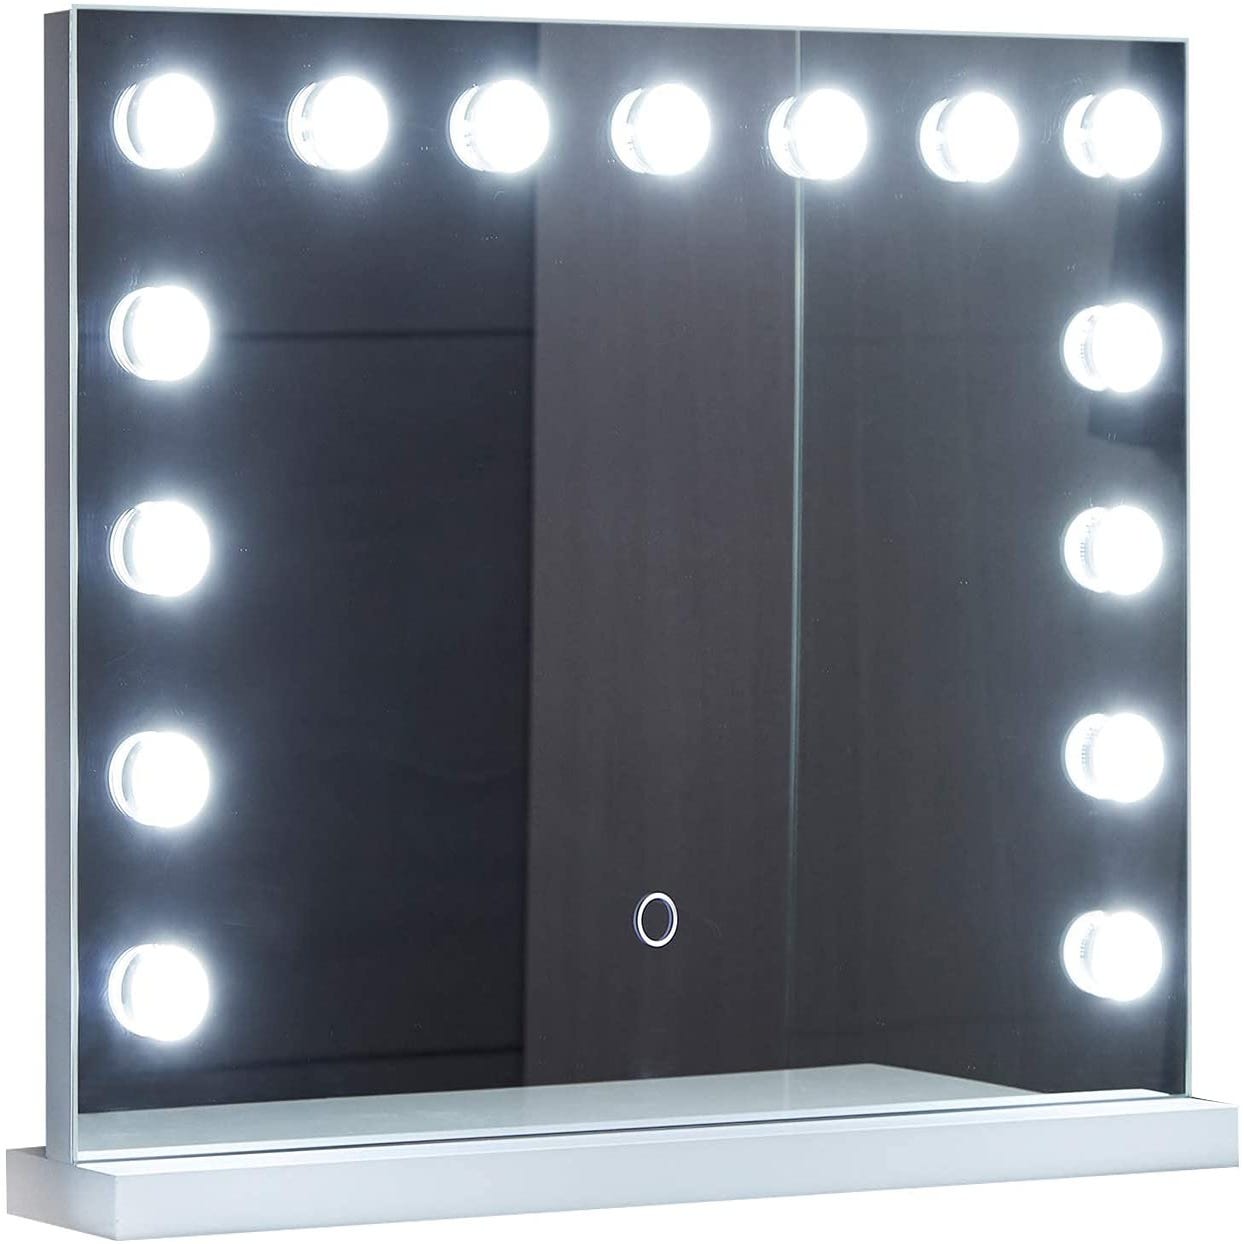 LED Miroir Coiffeuse 14 Ampoules, Lumière 3 Couleurs et 10